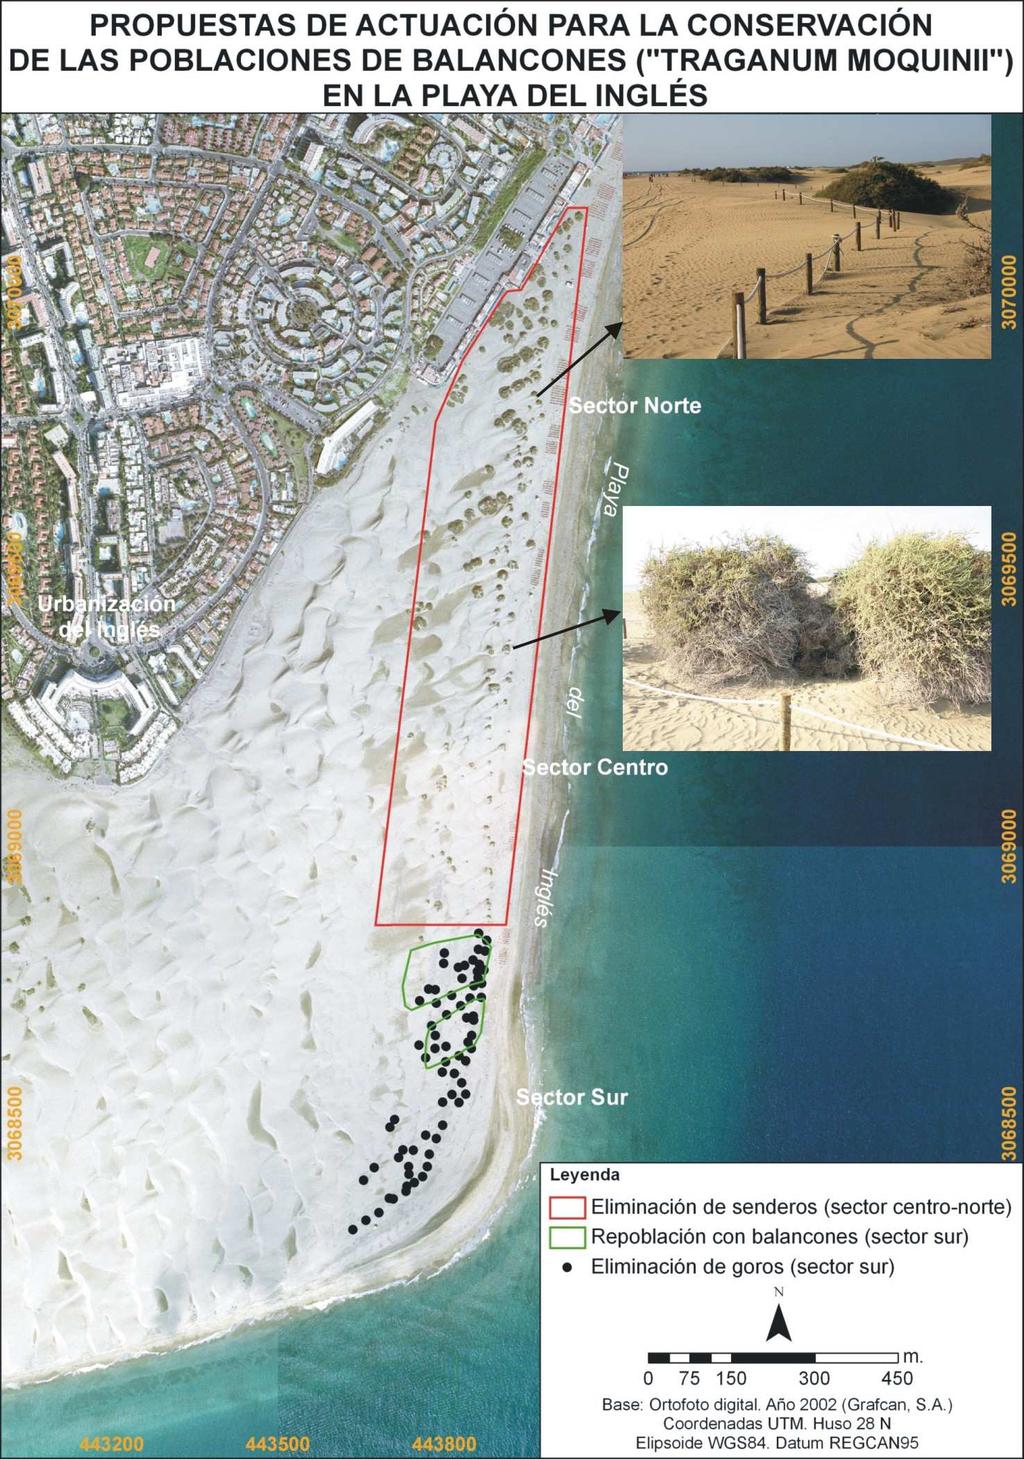 302 La gestión integrada de playas y dunas (2012) Fig. 11.